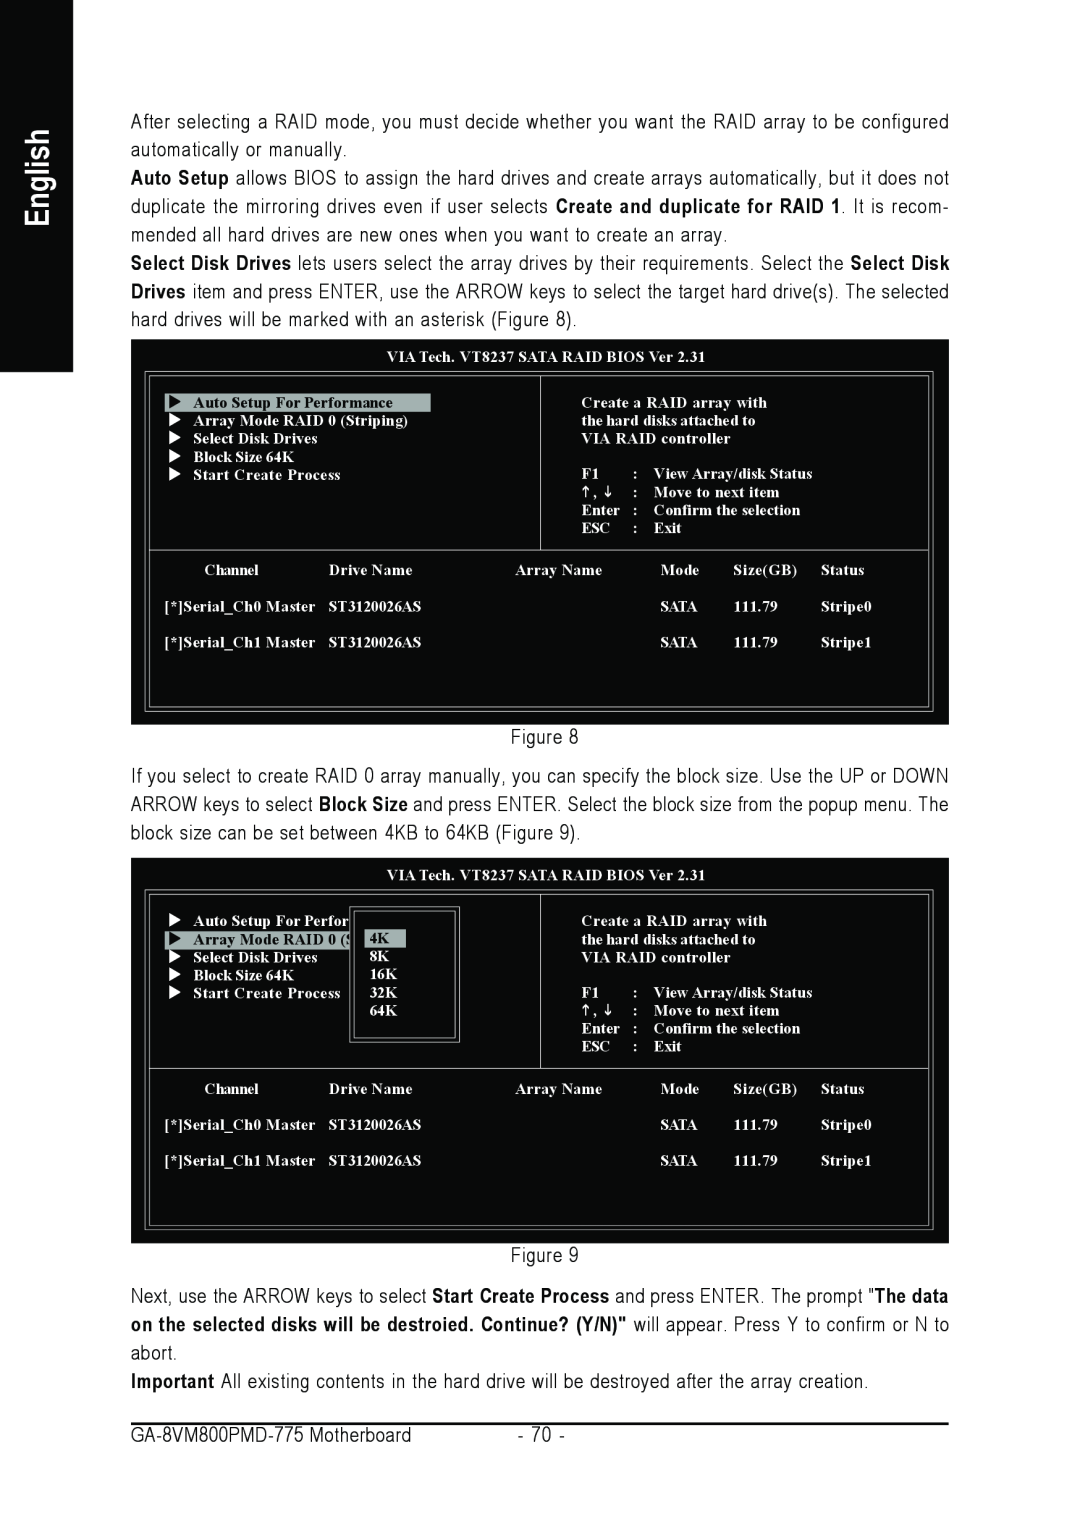 Intel GA-8VM800PMD-775 user manual English 